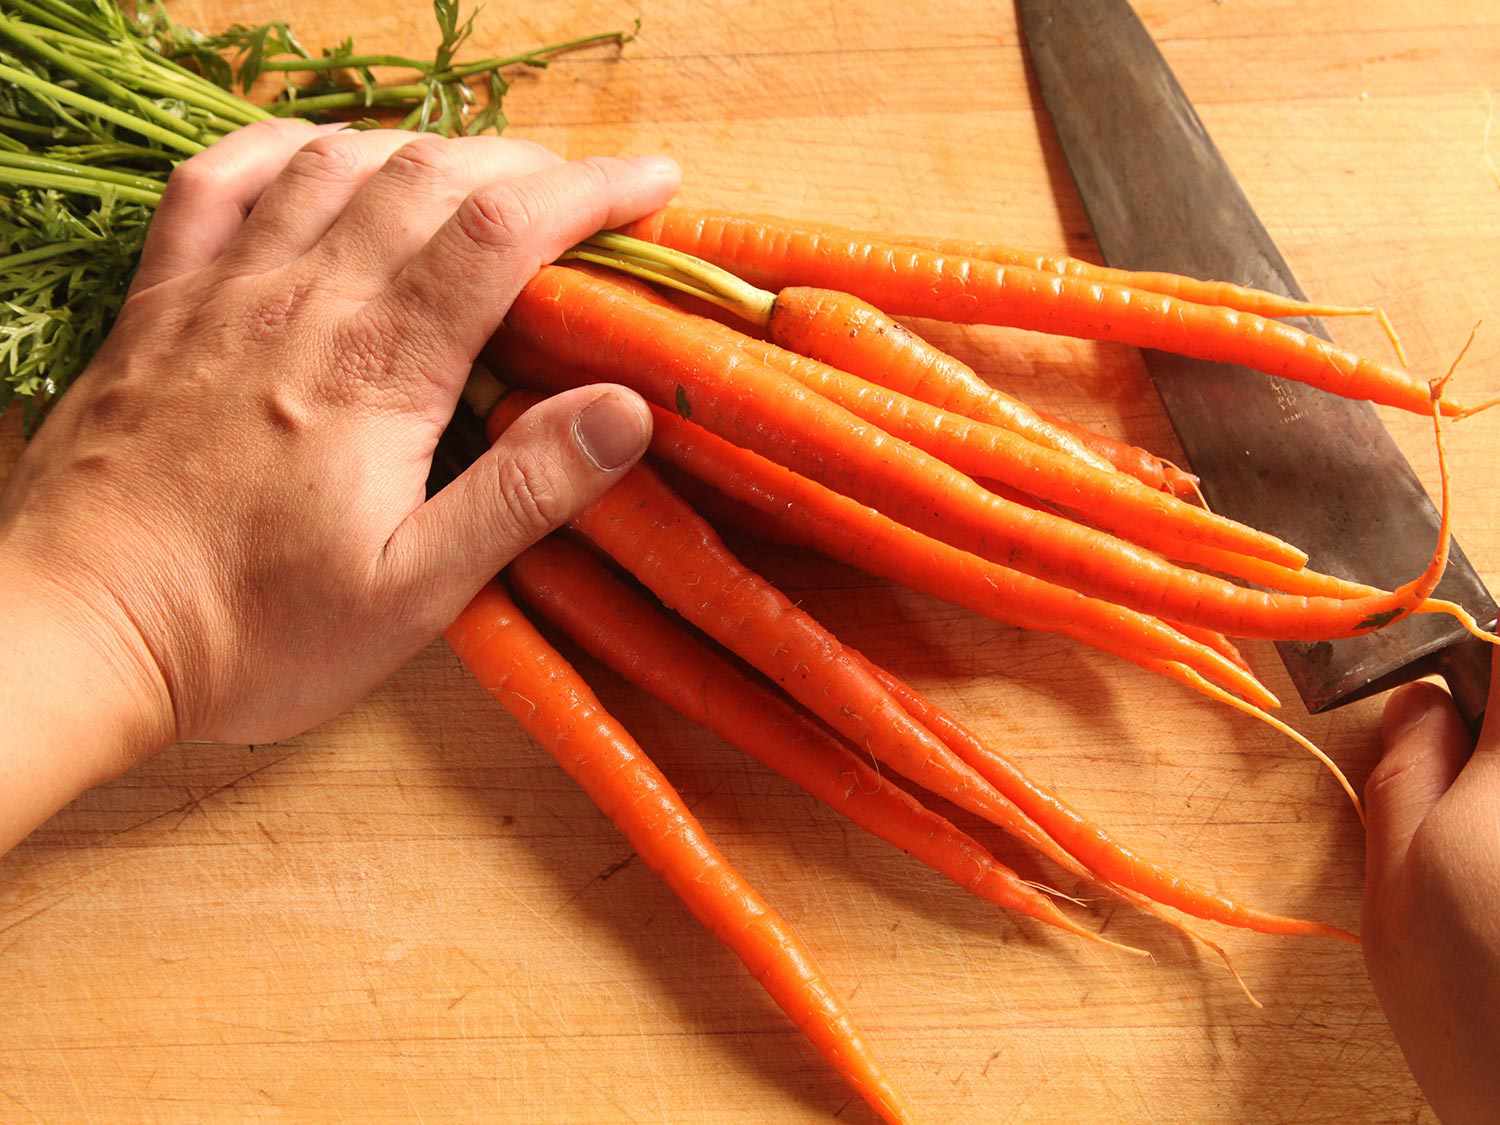 一手把胡萝卜束压在砧板上，另一手拿刀。